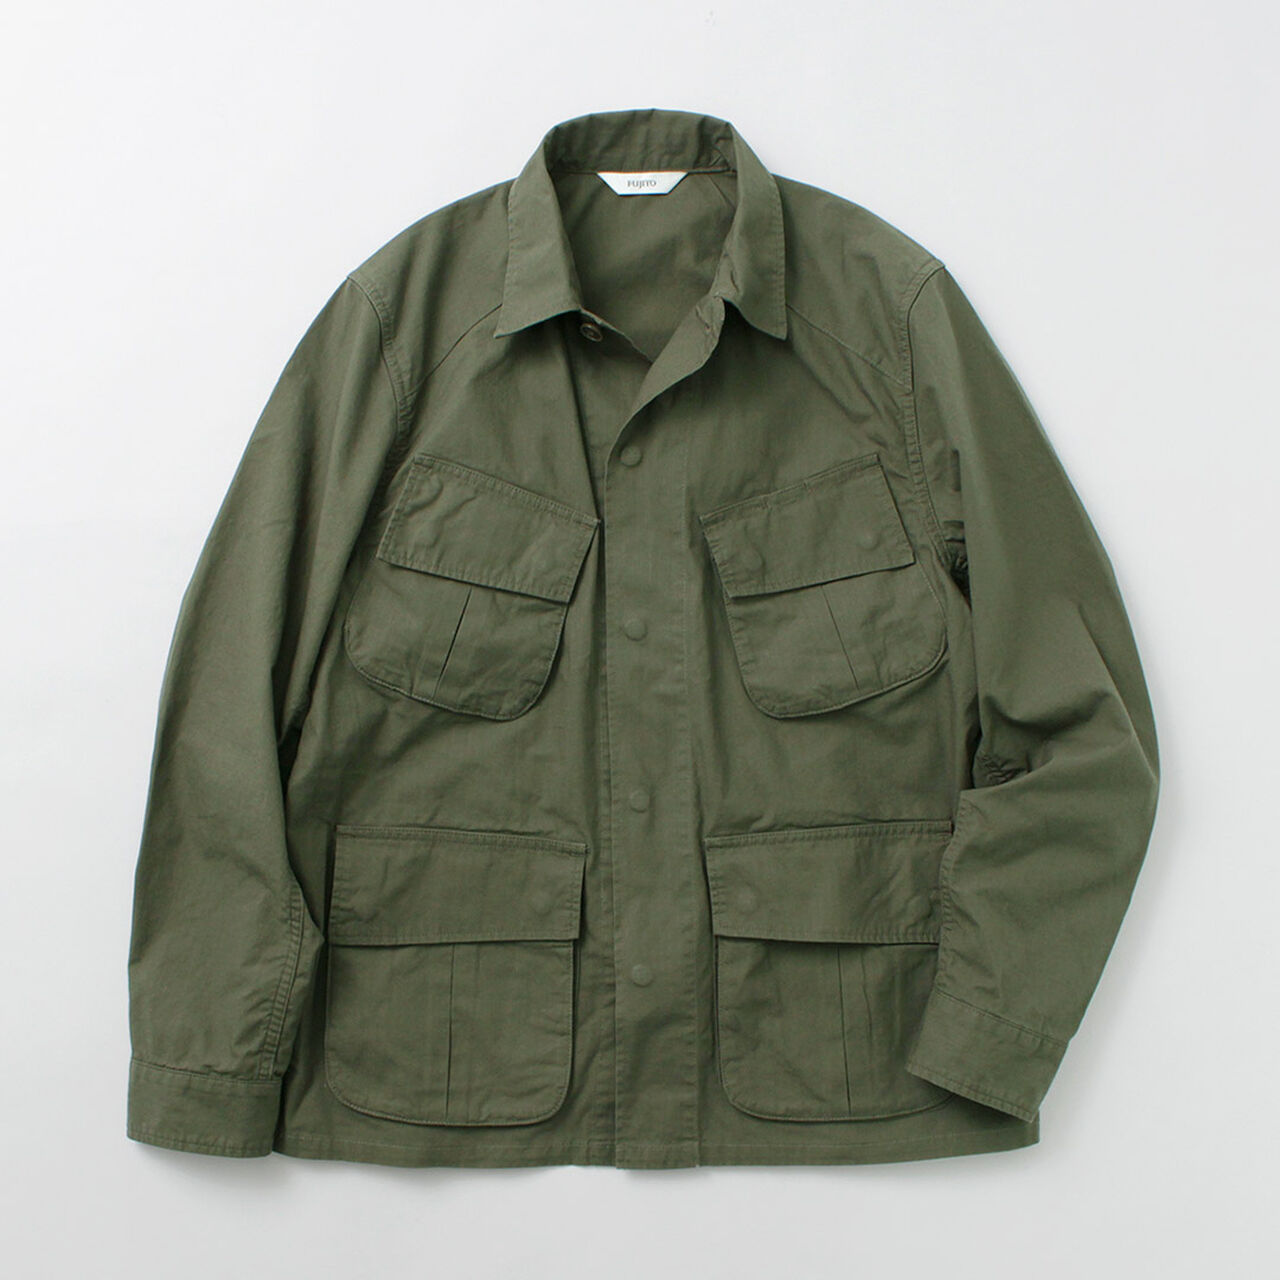 Fujito fatigue jacket jungle haku clothing